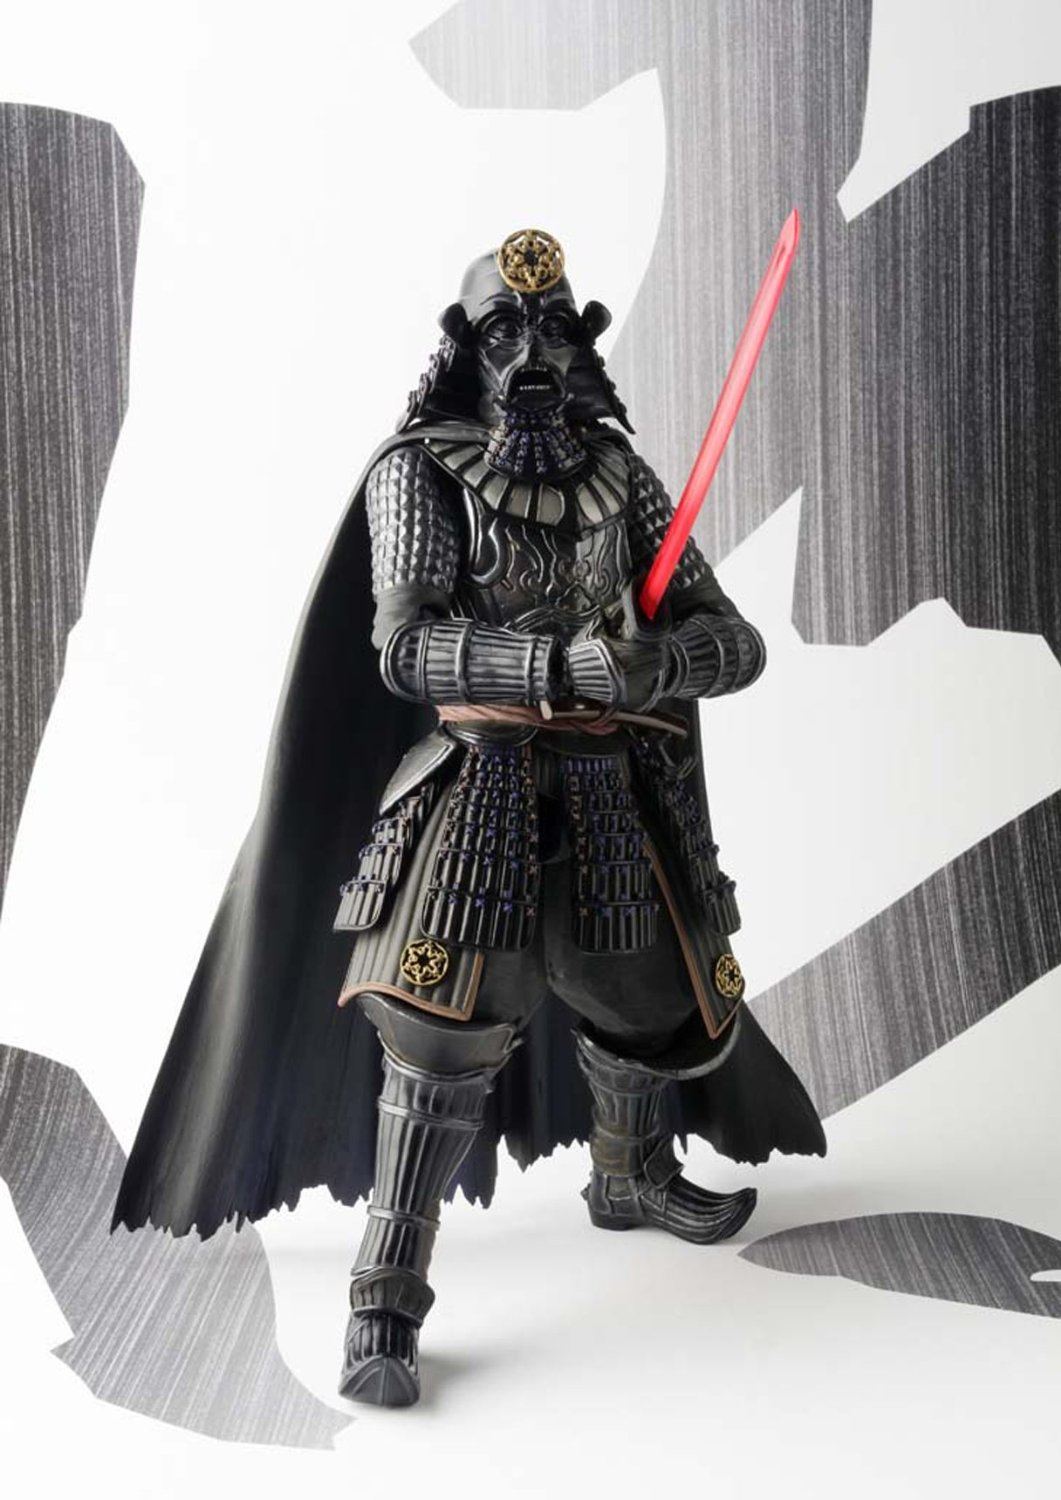 Star Wars Samurai General Darth Vader Meisho Movie Realization Action Figure